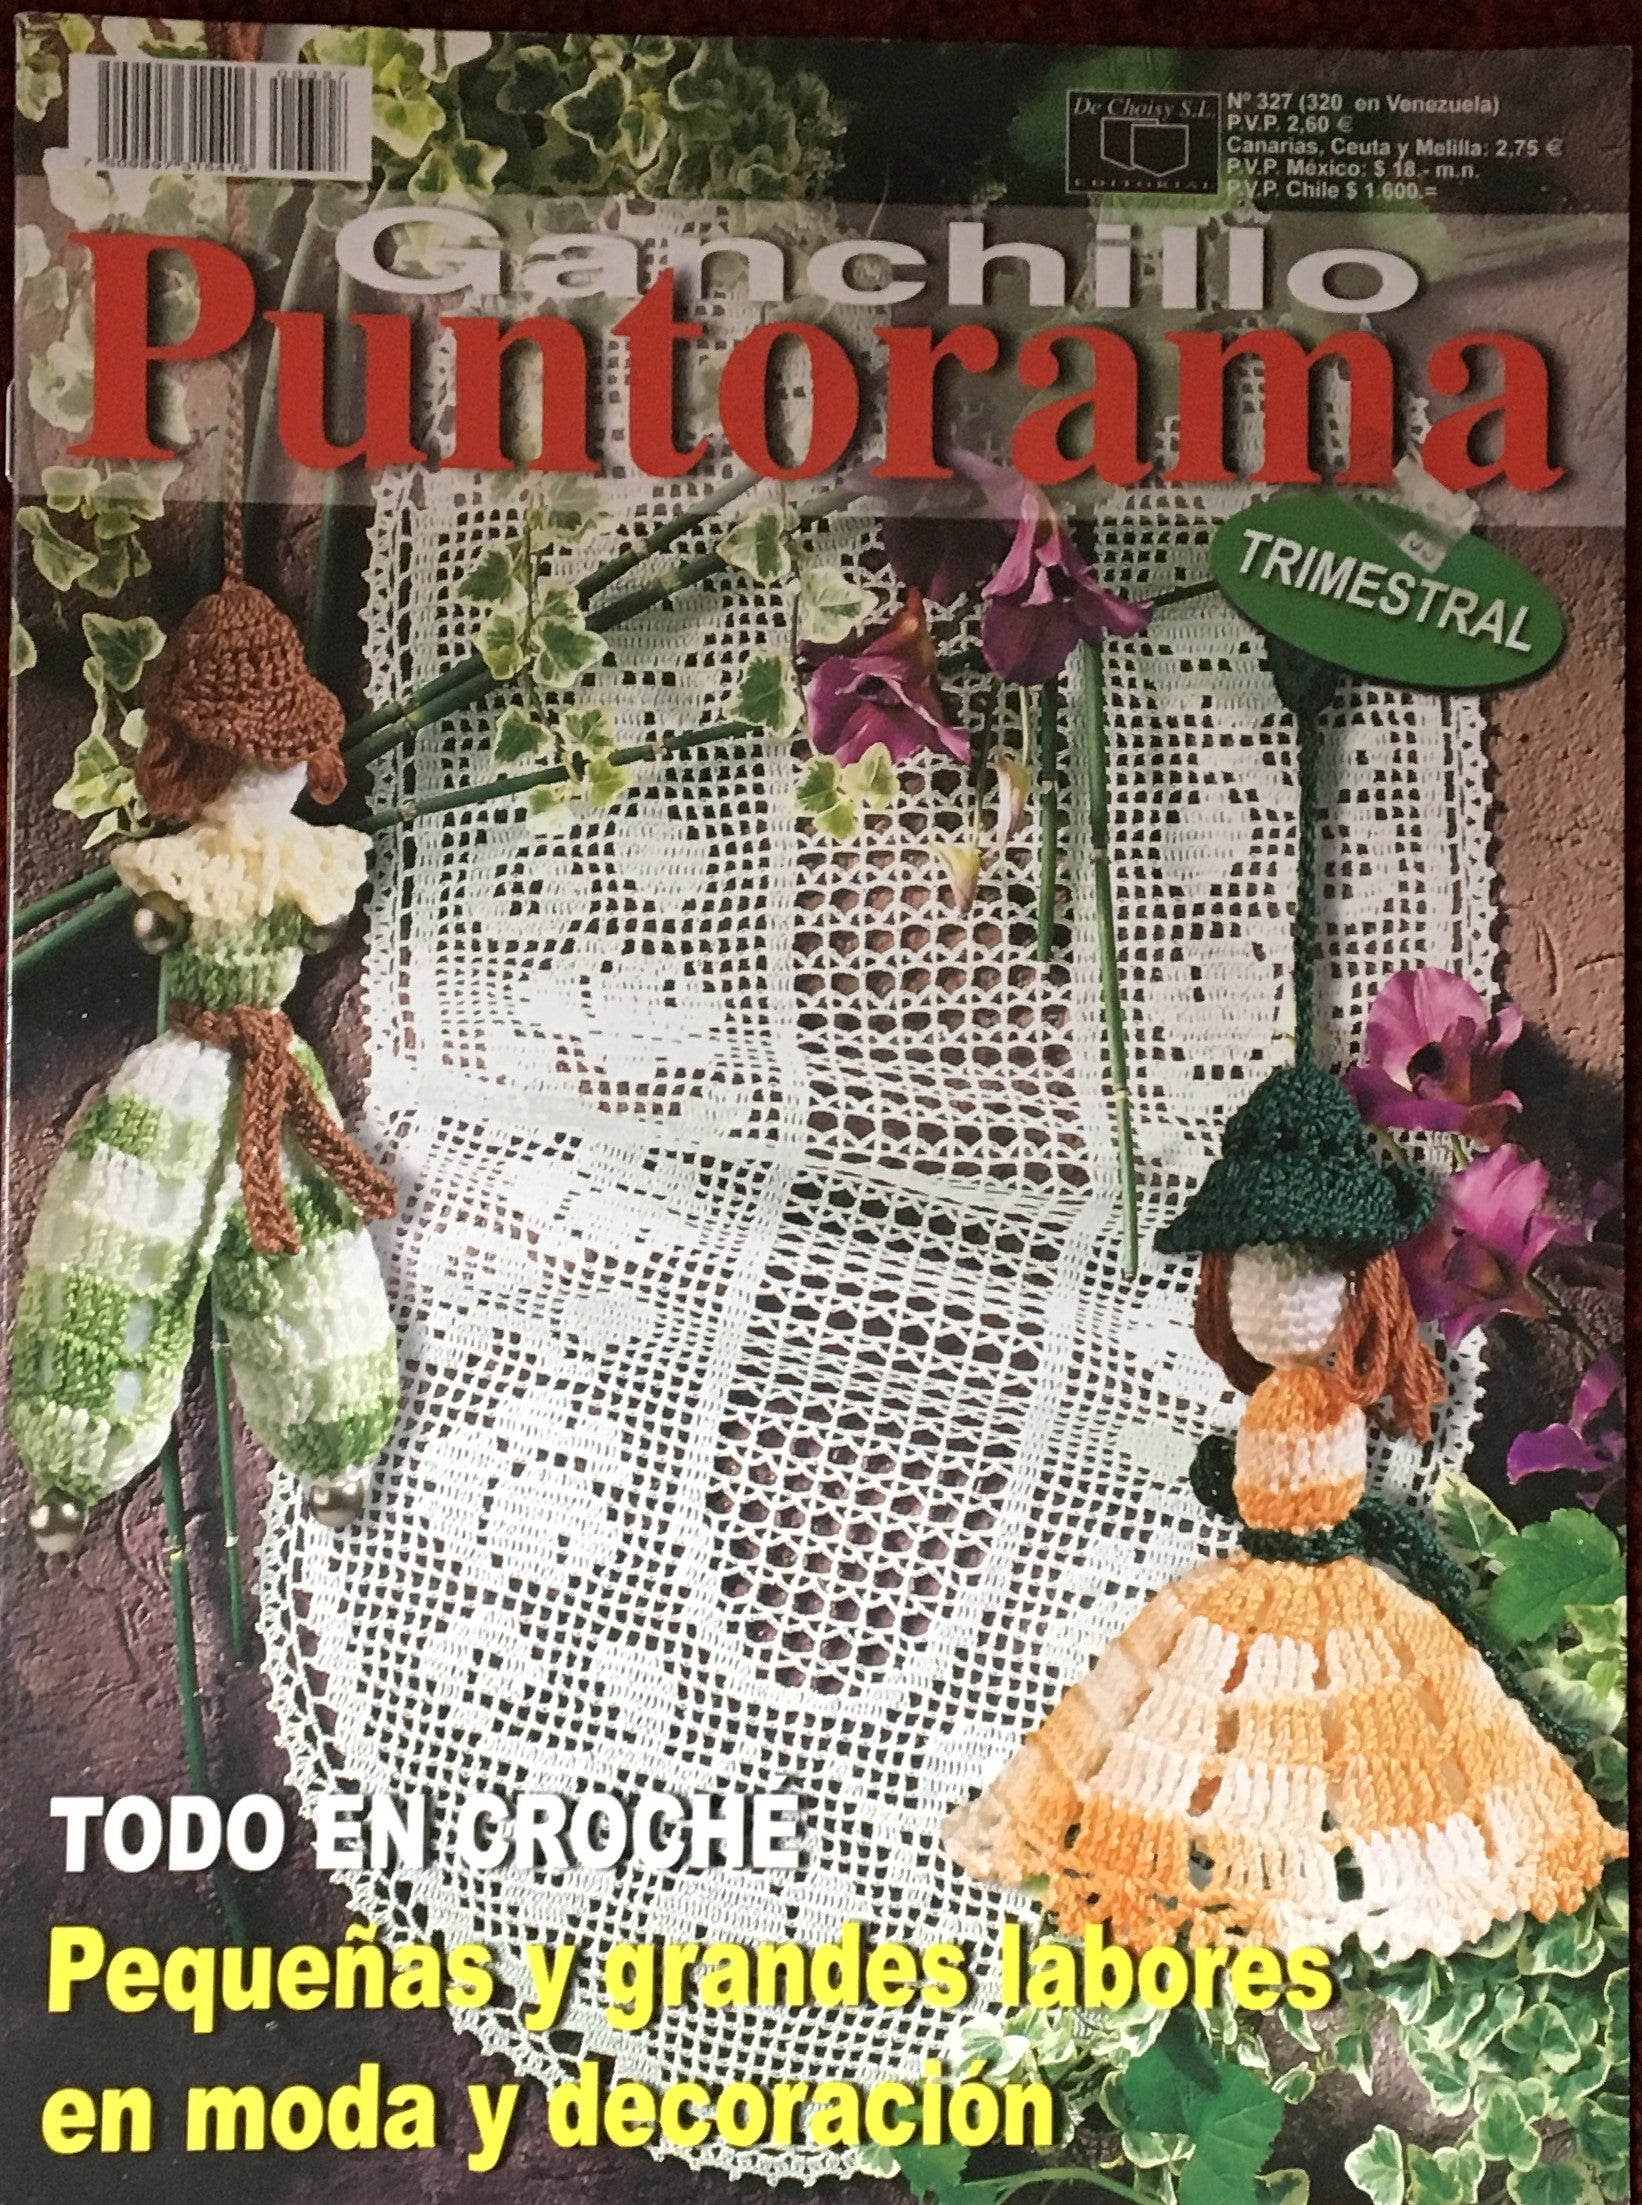 GANCHILLO Revista para Crochet de Ganchillo Artistico y Puntorama -   México